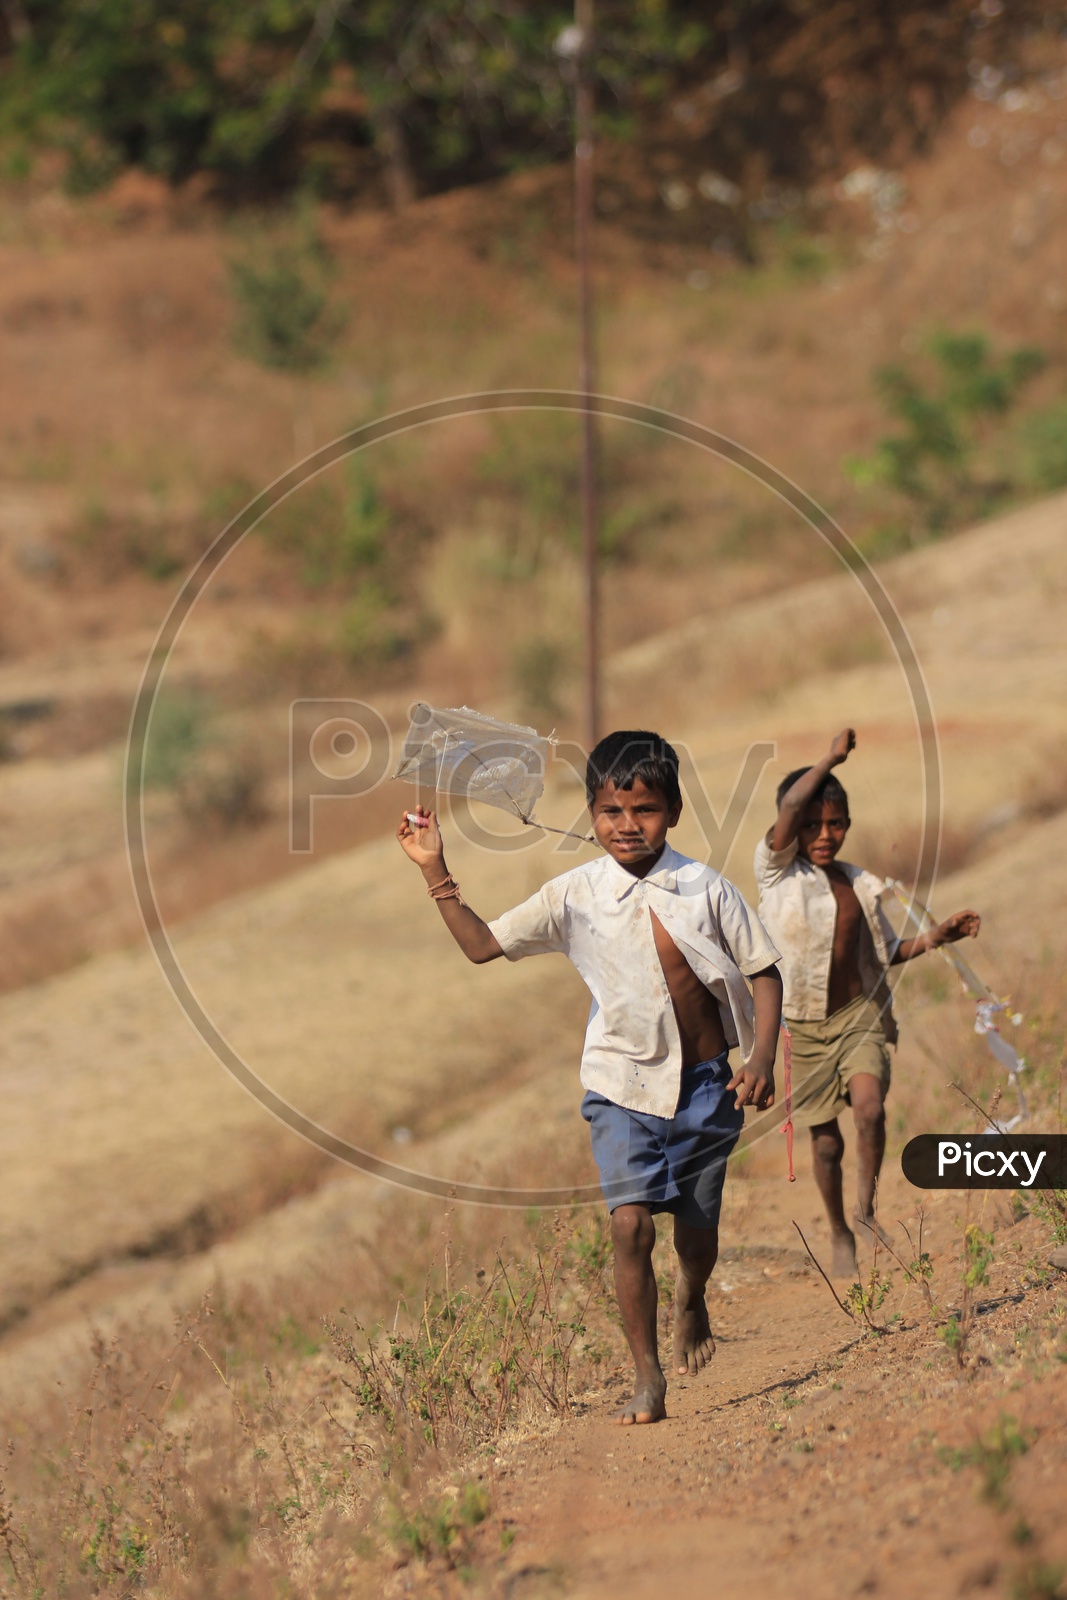 Two kids having fun by flying Kites